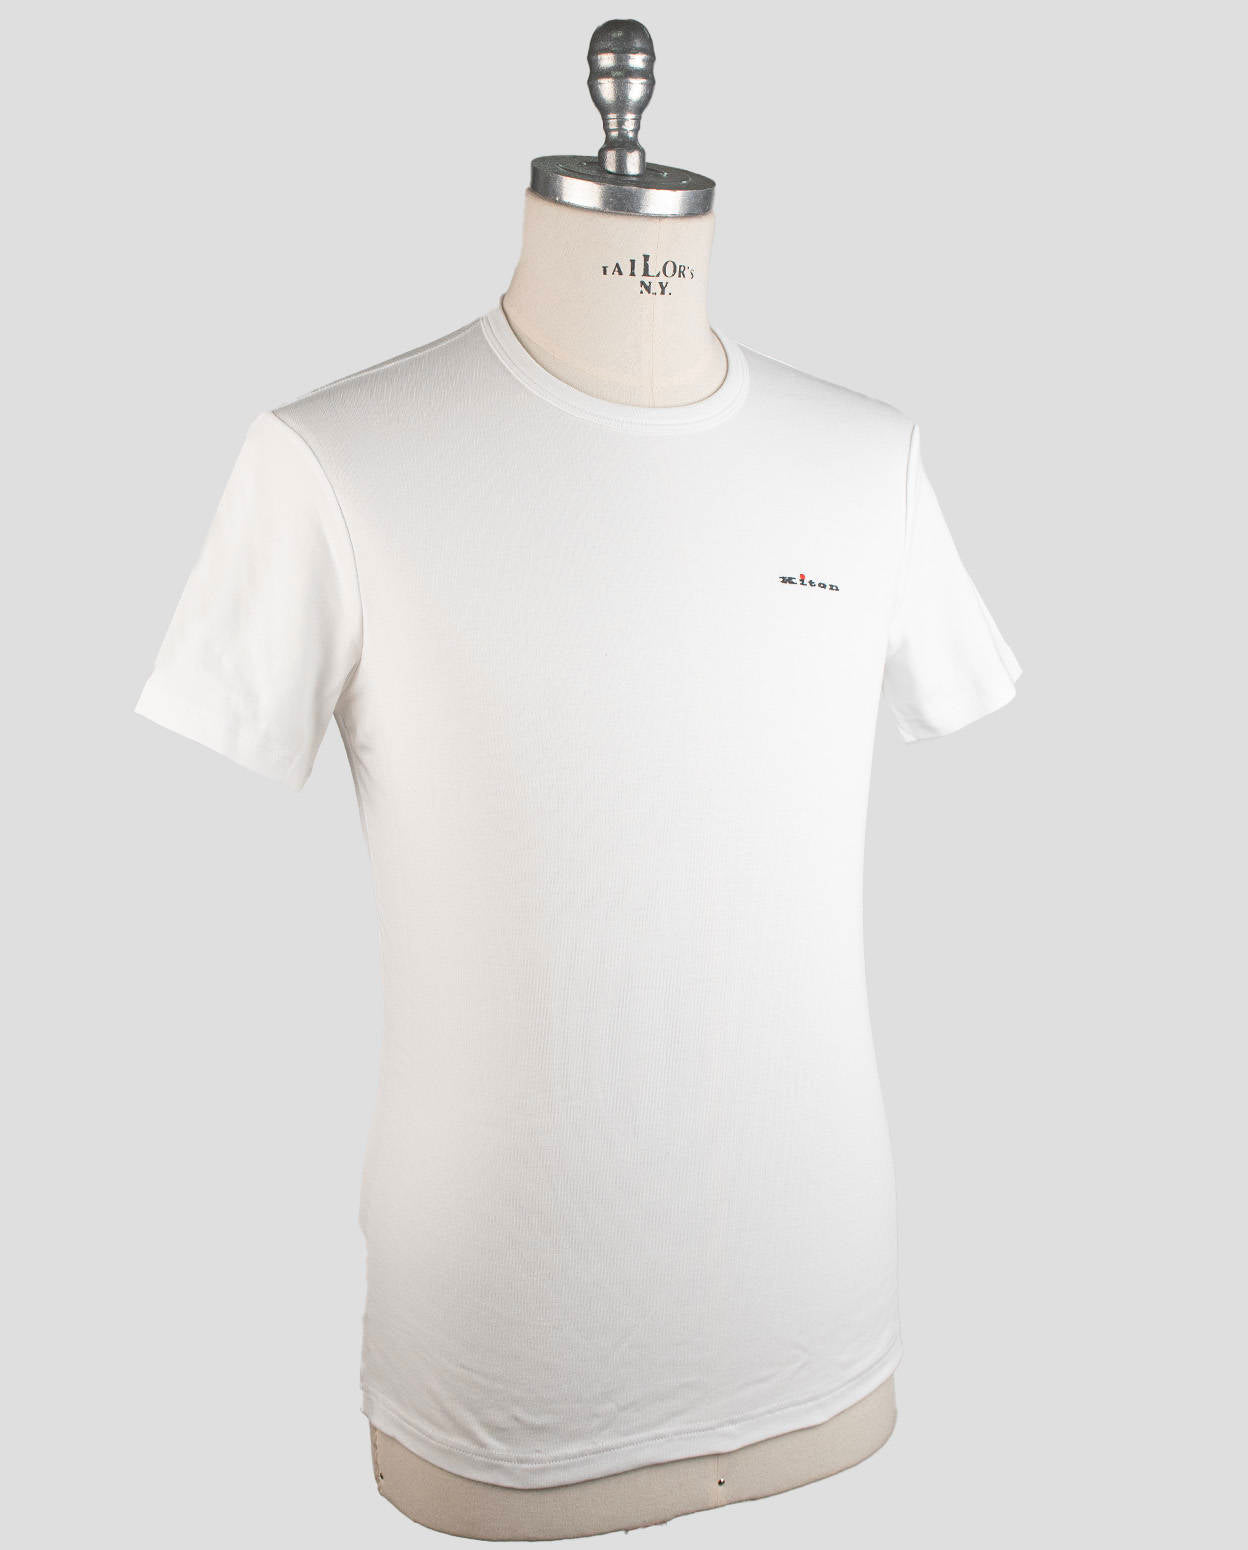 Kiton White Cotton Ea T-Shirt Underwear